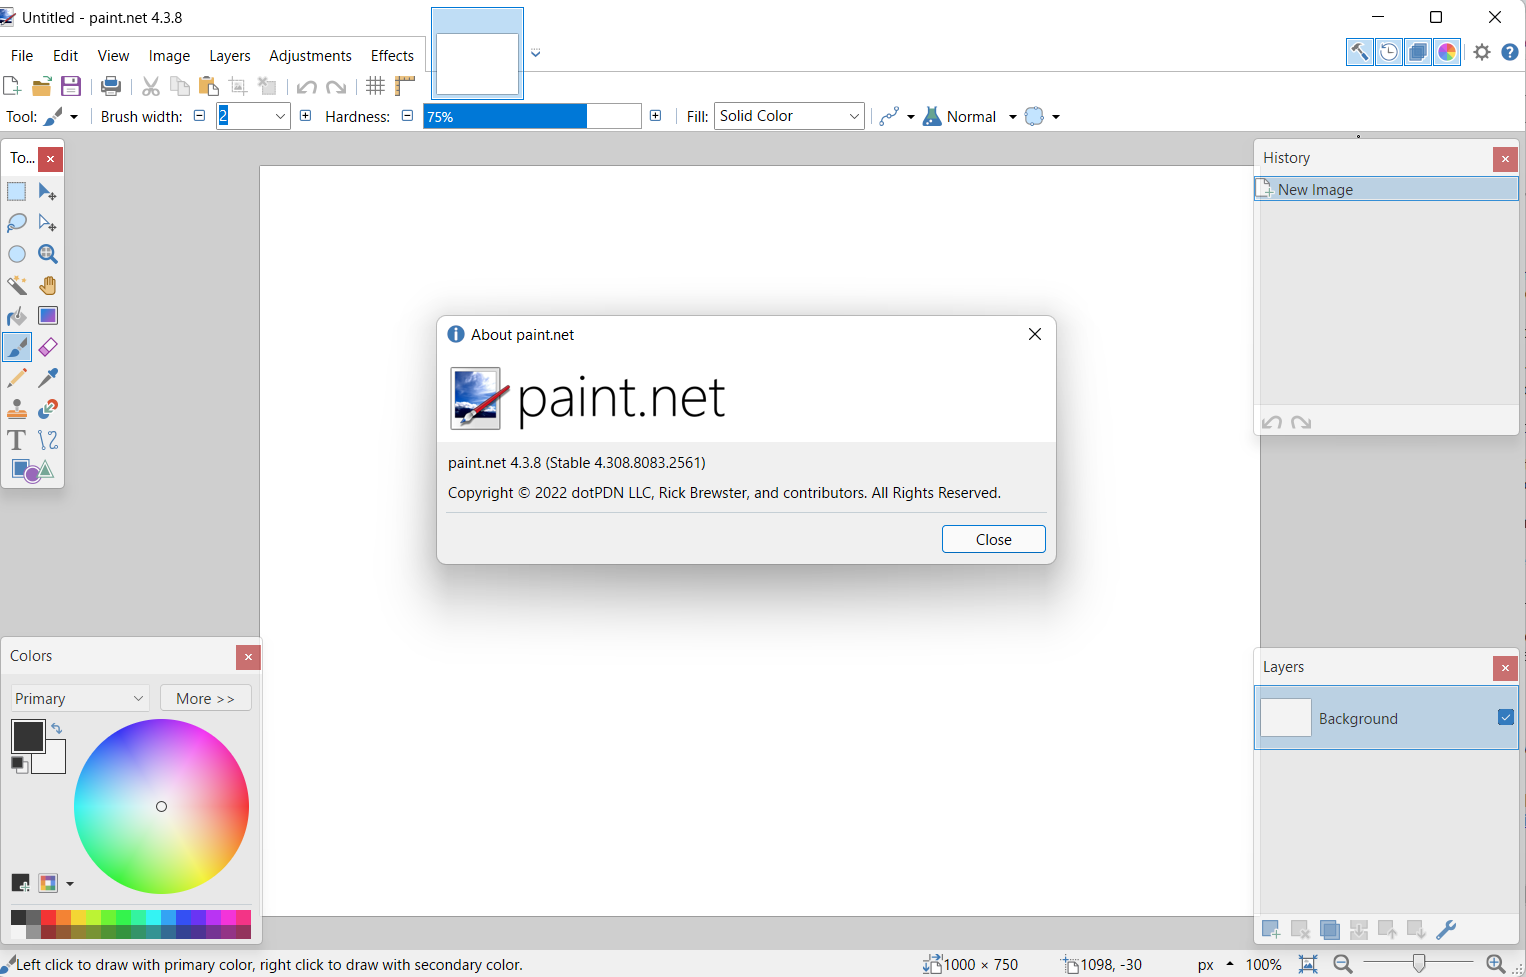 Paint.net 4.3.8 可能是 Windows 7 和 Windows 8.1 的最后一个版本